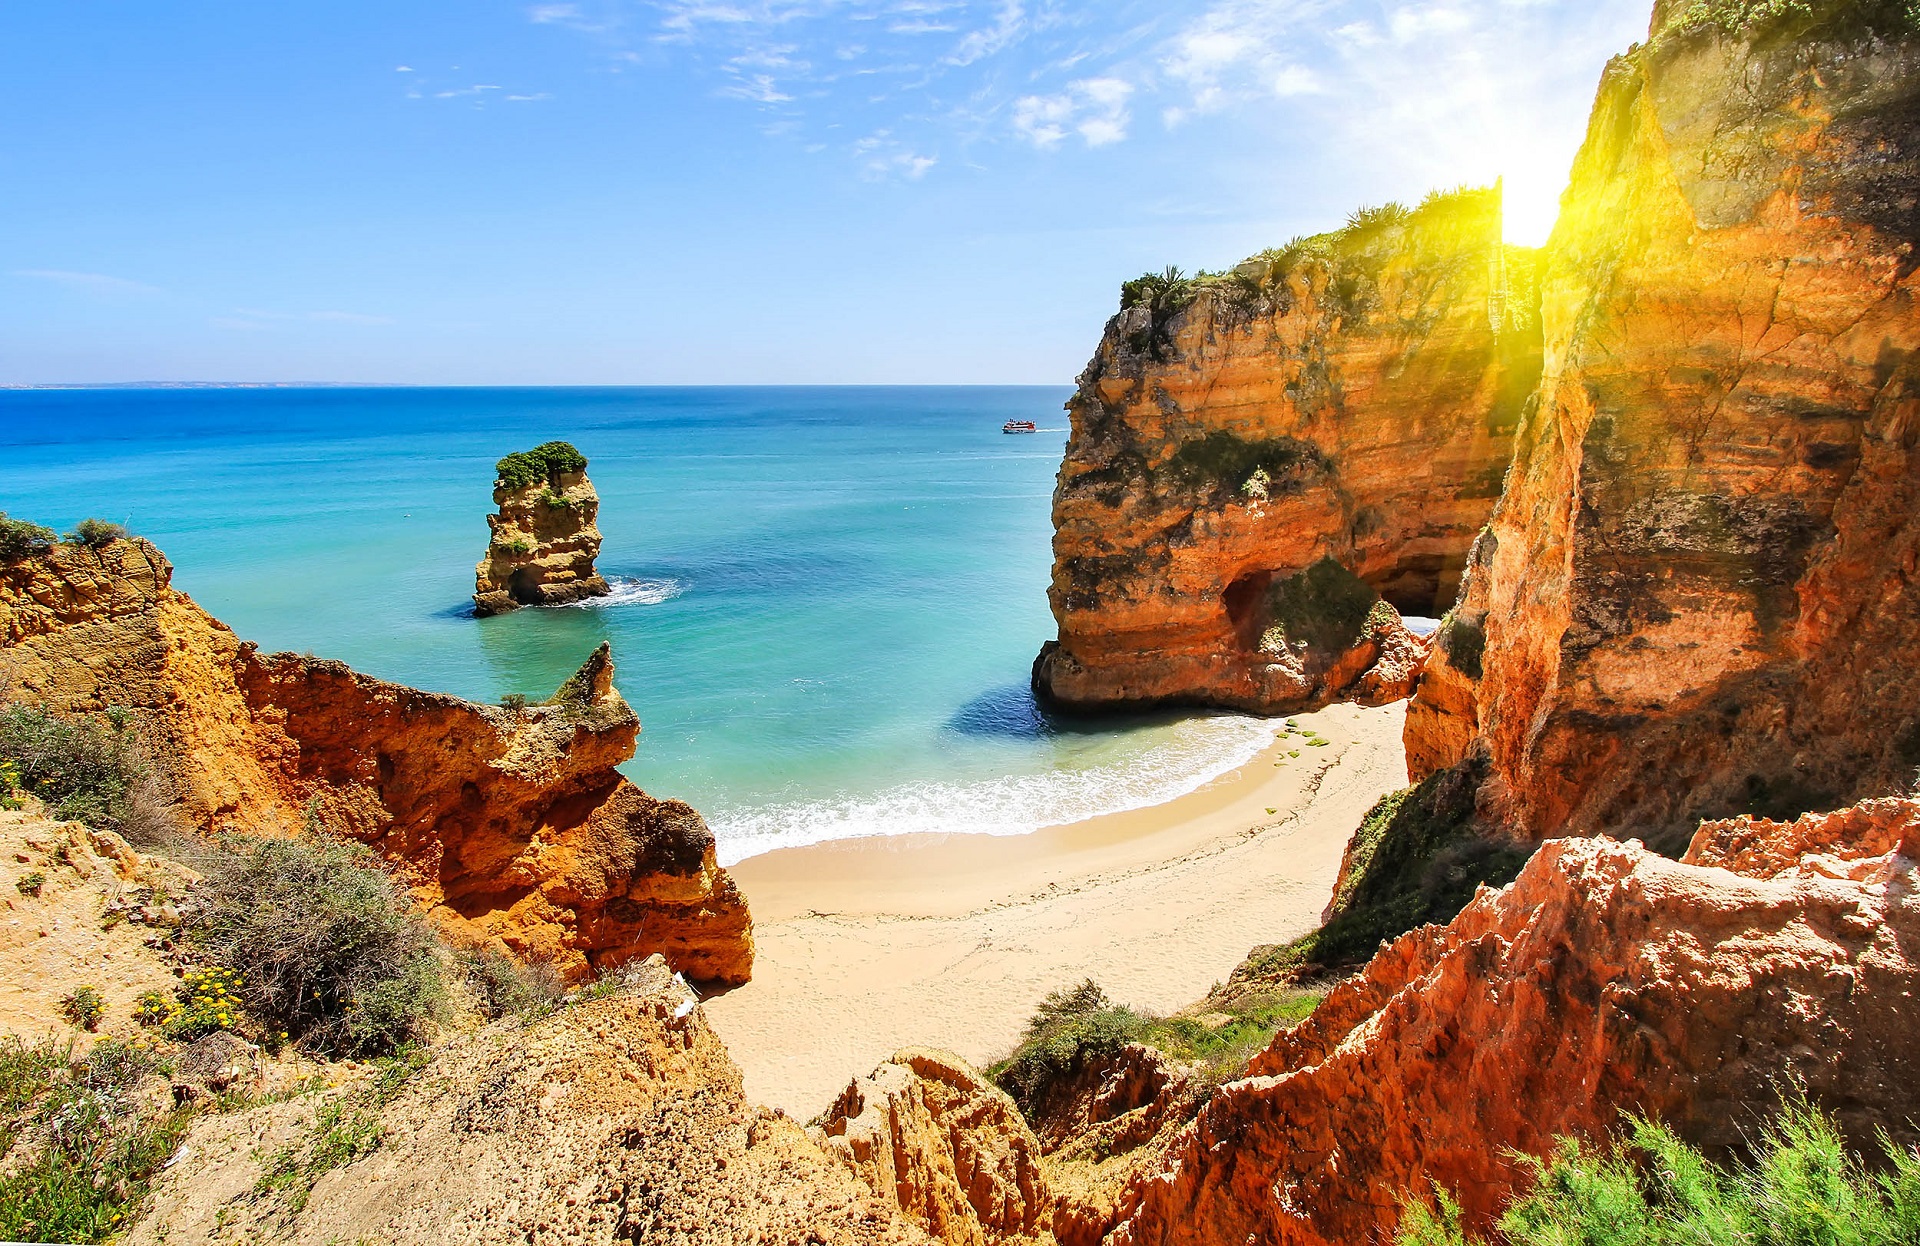 Vacanta in minunatul Algarve, Portugalia – 148 euro (zbor + cazare 6 nopti) – cunoscut pentru plaje exotice